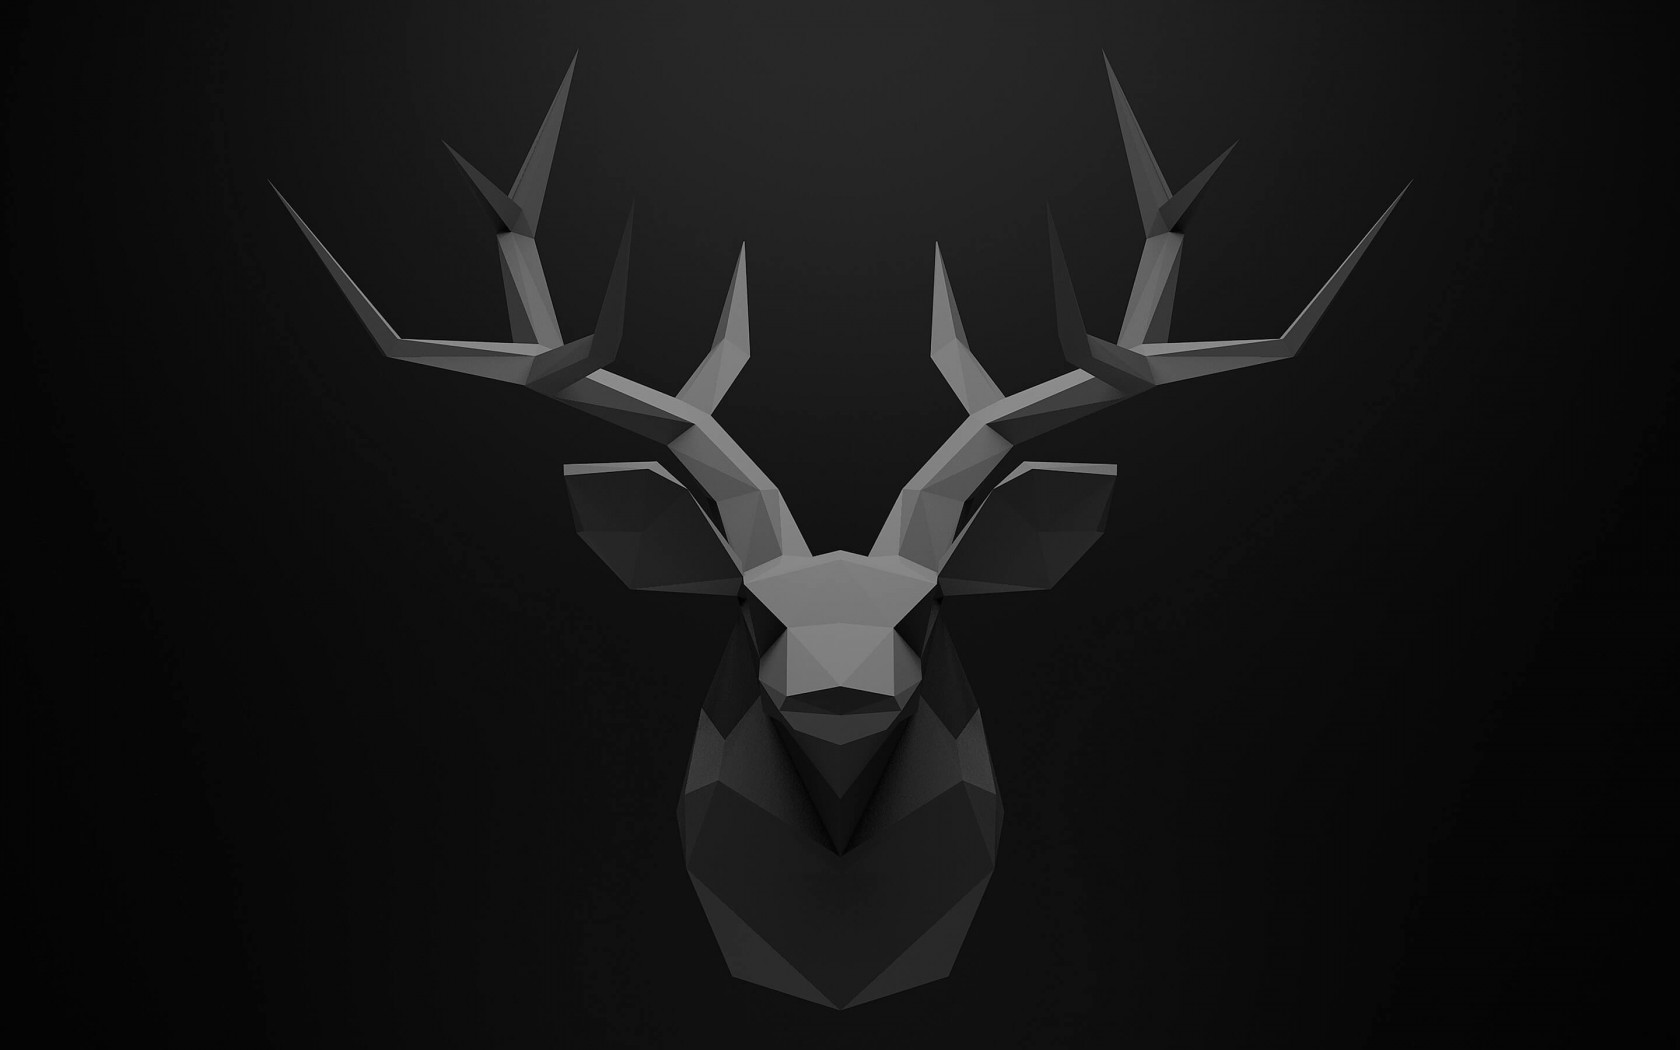 Low Poly Deer Head Wallpaper for Desktop 1680x1050